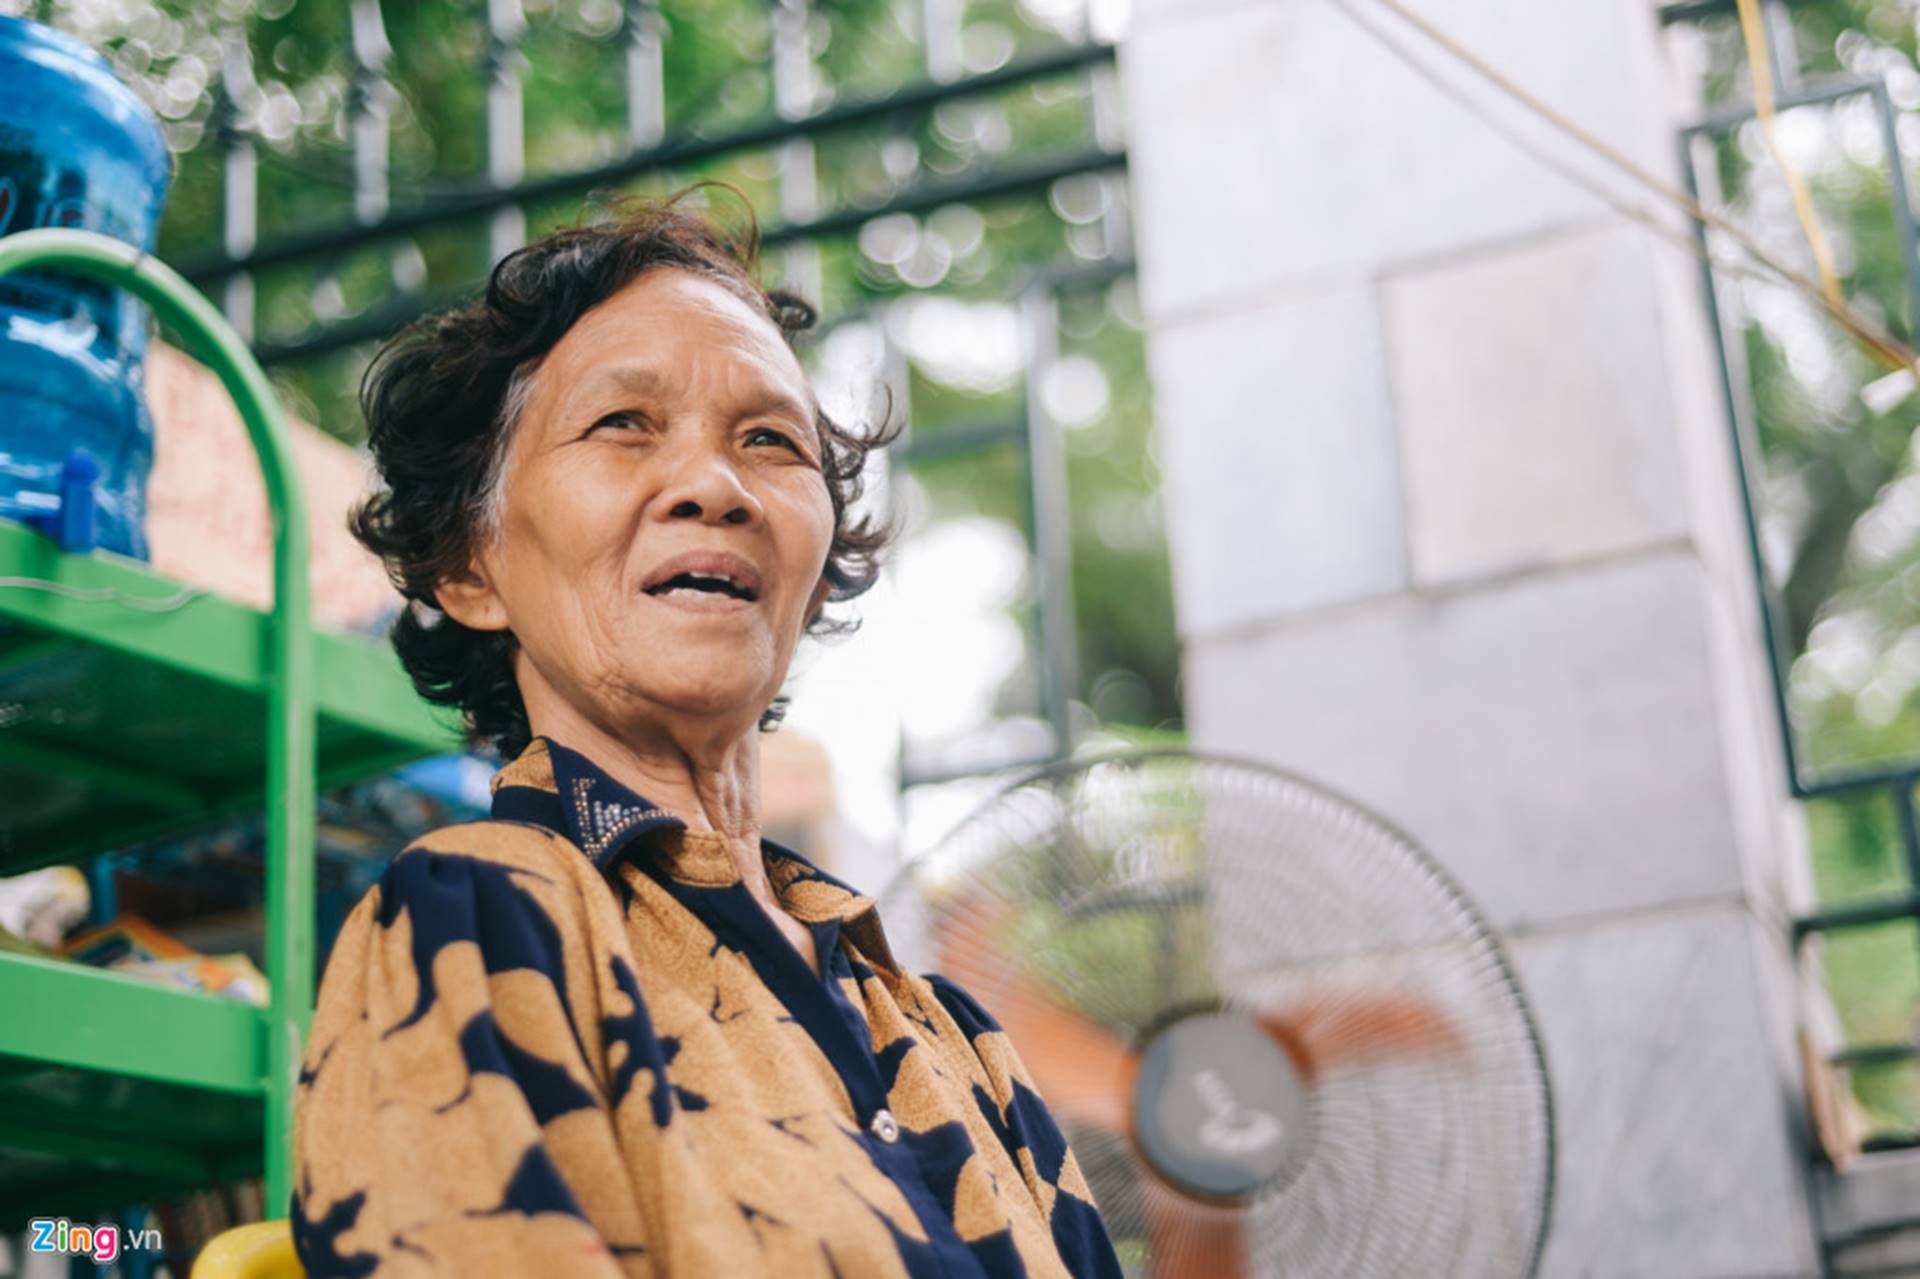 Đó là lời chia sẻ của bà Phạm Thị Huyền Dung (72 tuổi, từng là giảng viên môn Triết học tại Học viện Chính trị quốc gia Hồ Chí Minh), “thủ thư” của quầy sách báo miễn phí trước cửa số nhà 55 Đặng Tiến Đông (Đống Đa, Hà Nội).